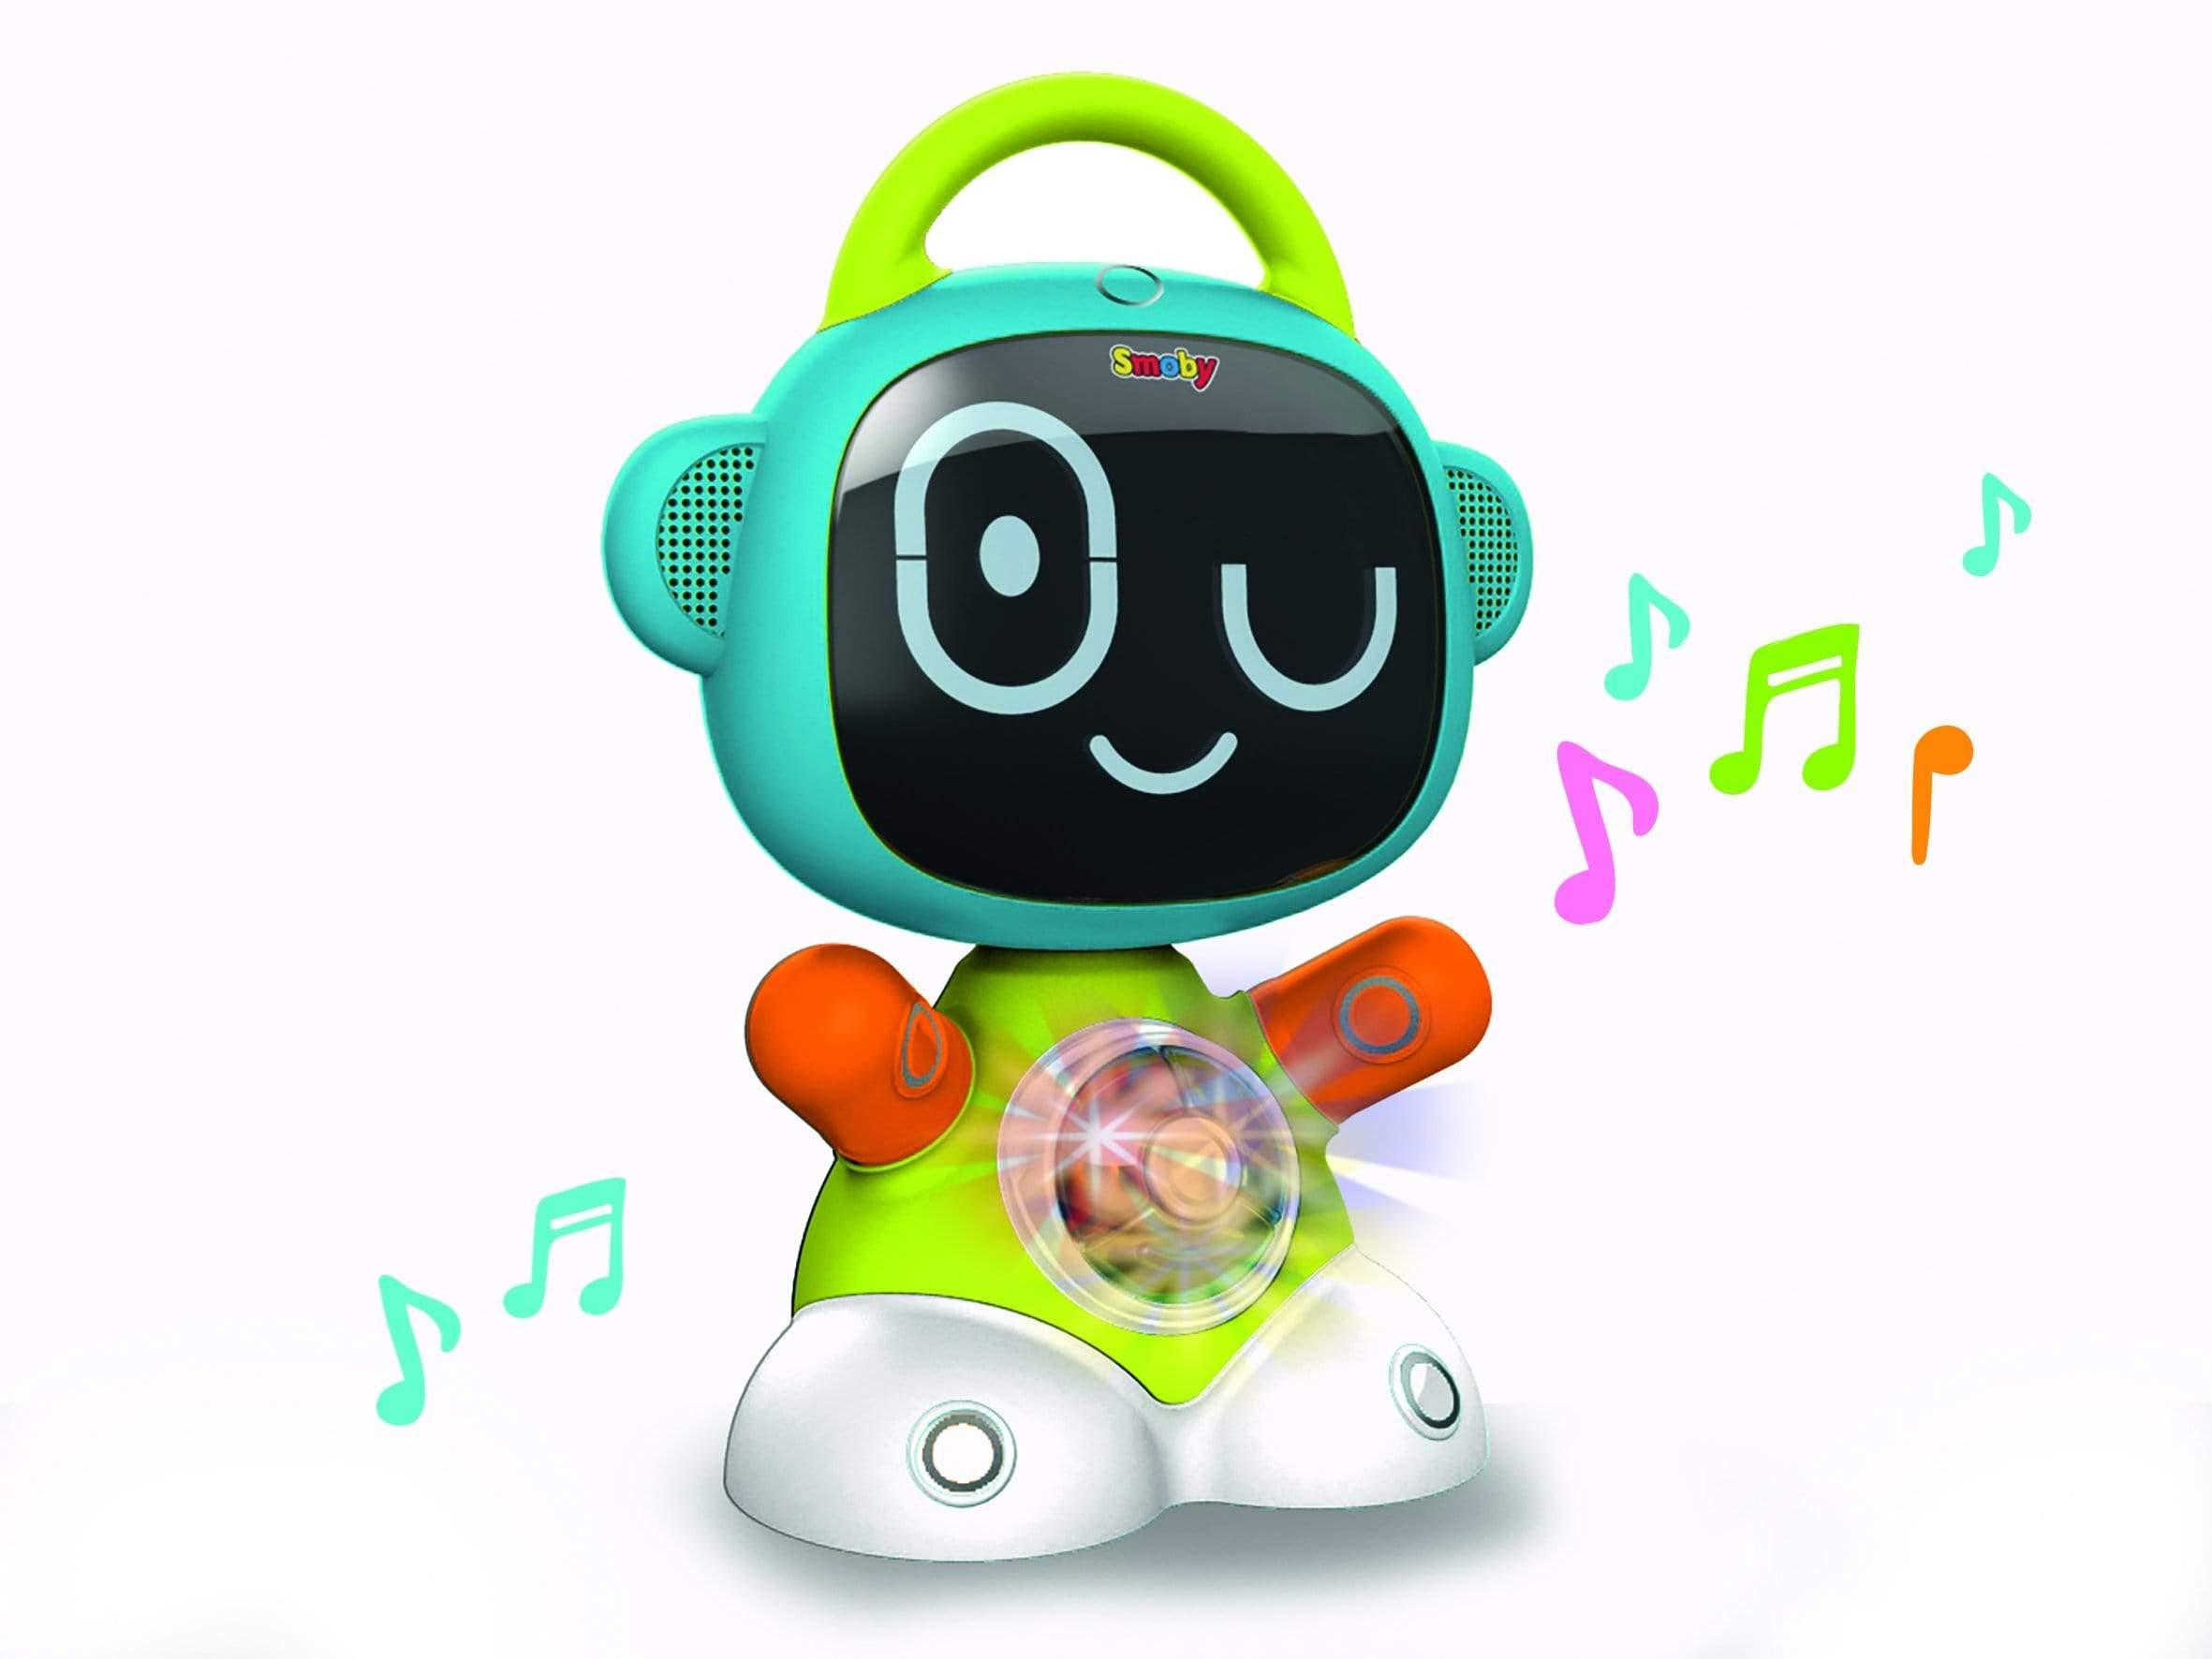 لعبة روبوت اطفال ذكي تعليمي وترفيهي سموبي Smoby Educational And Entertaining Smart Robot - cG9zdDo2MDc4NQ==